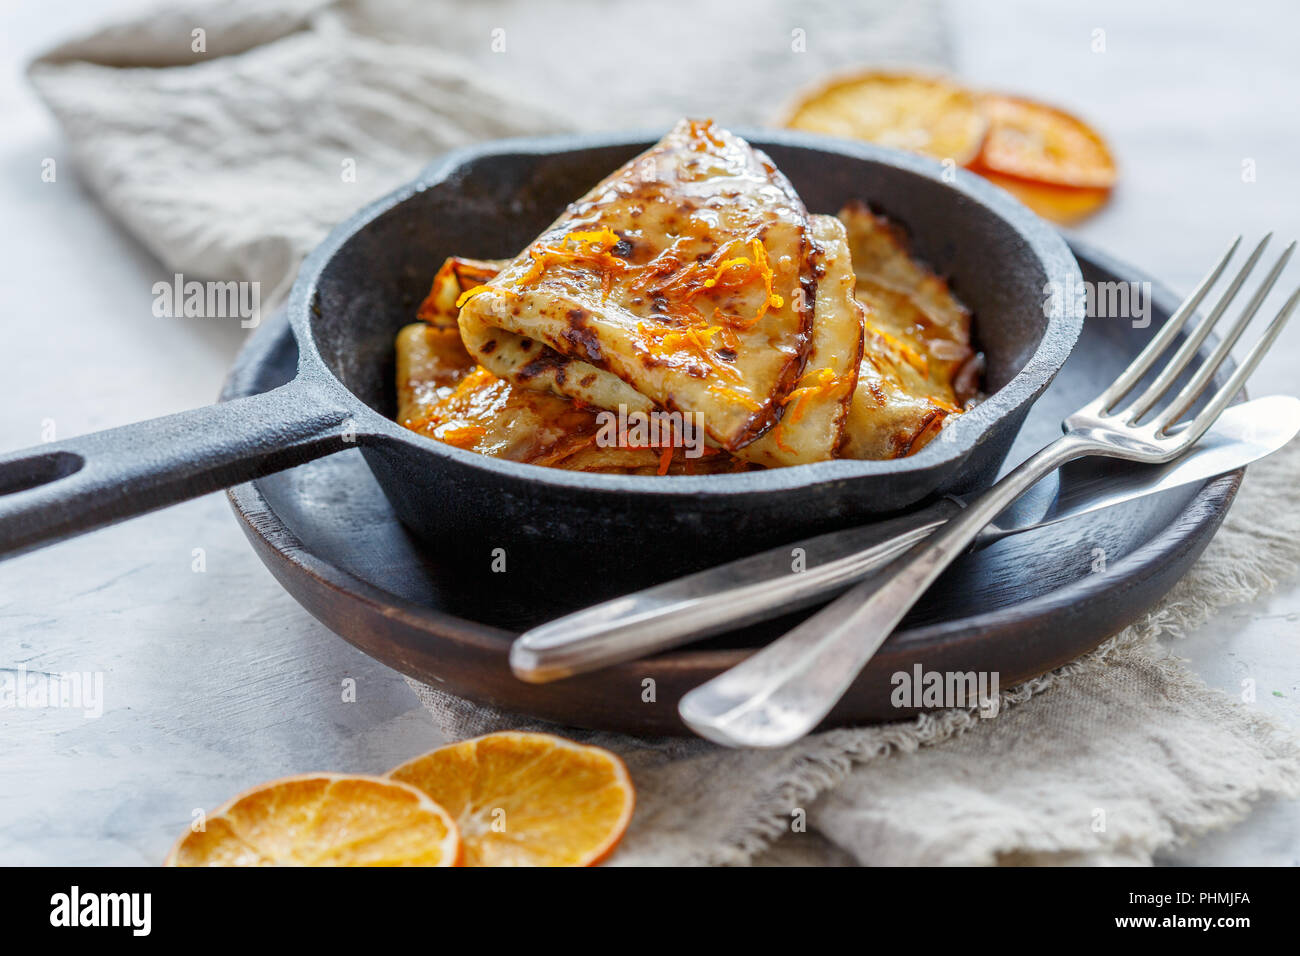 Crepe Suzette with orange sauce. Stock Photo